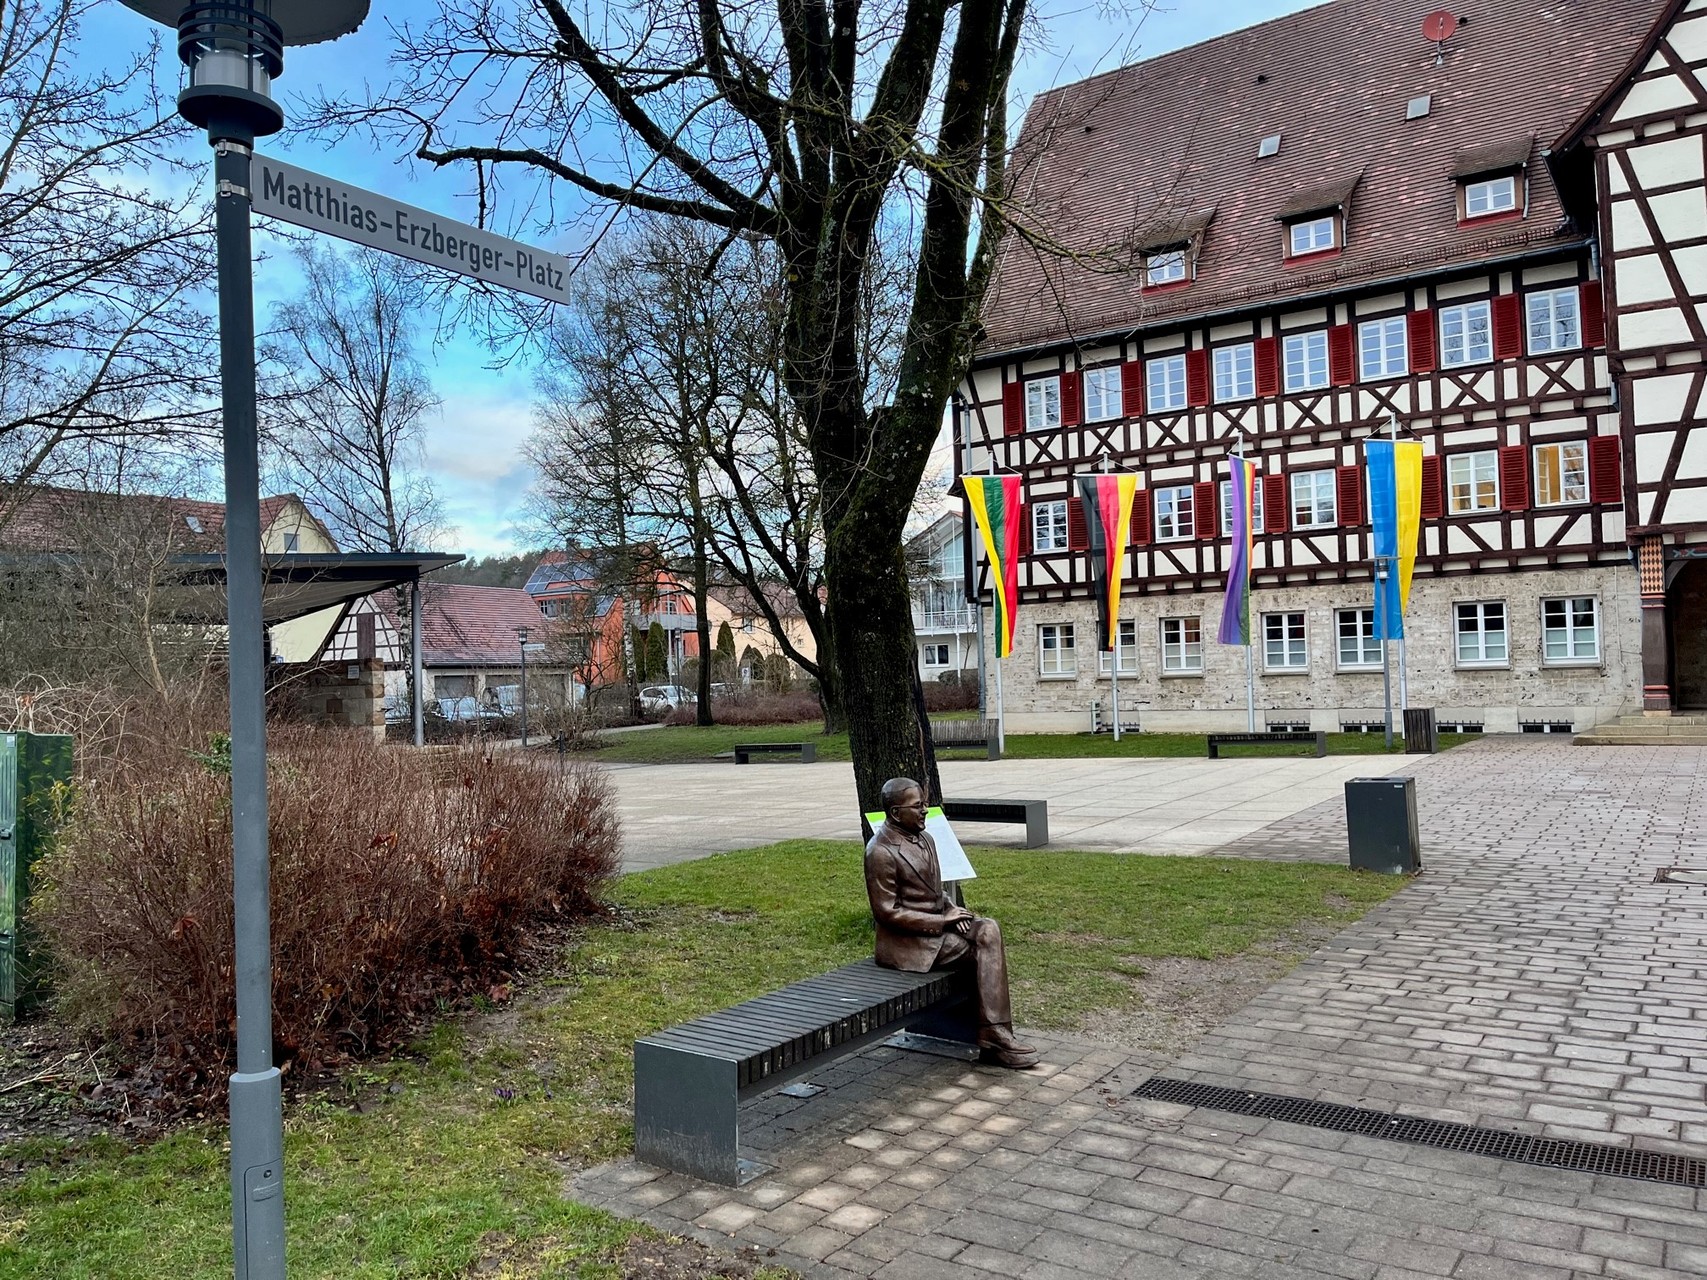 Der Matthias-Erzberger-Platz in Münsingen im Biosphärengebiet Schwäbische Alb. Auf einer Bank sitzt eine bronzefarbene Statue. Davor ist ein Platz mit einem großen historischen Fachwerkgebäude, vor dem verschiedene Fahnen wehen. Links ist eine Laterne mit dem Schild und der Aufschrift Matthias-Erzberger-Platz.